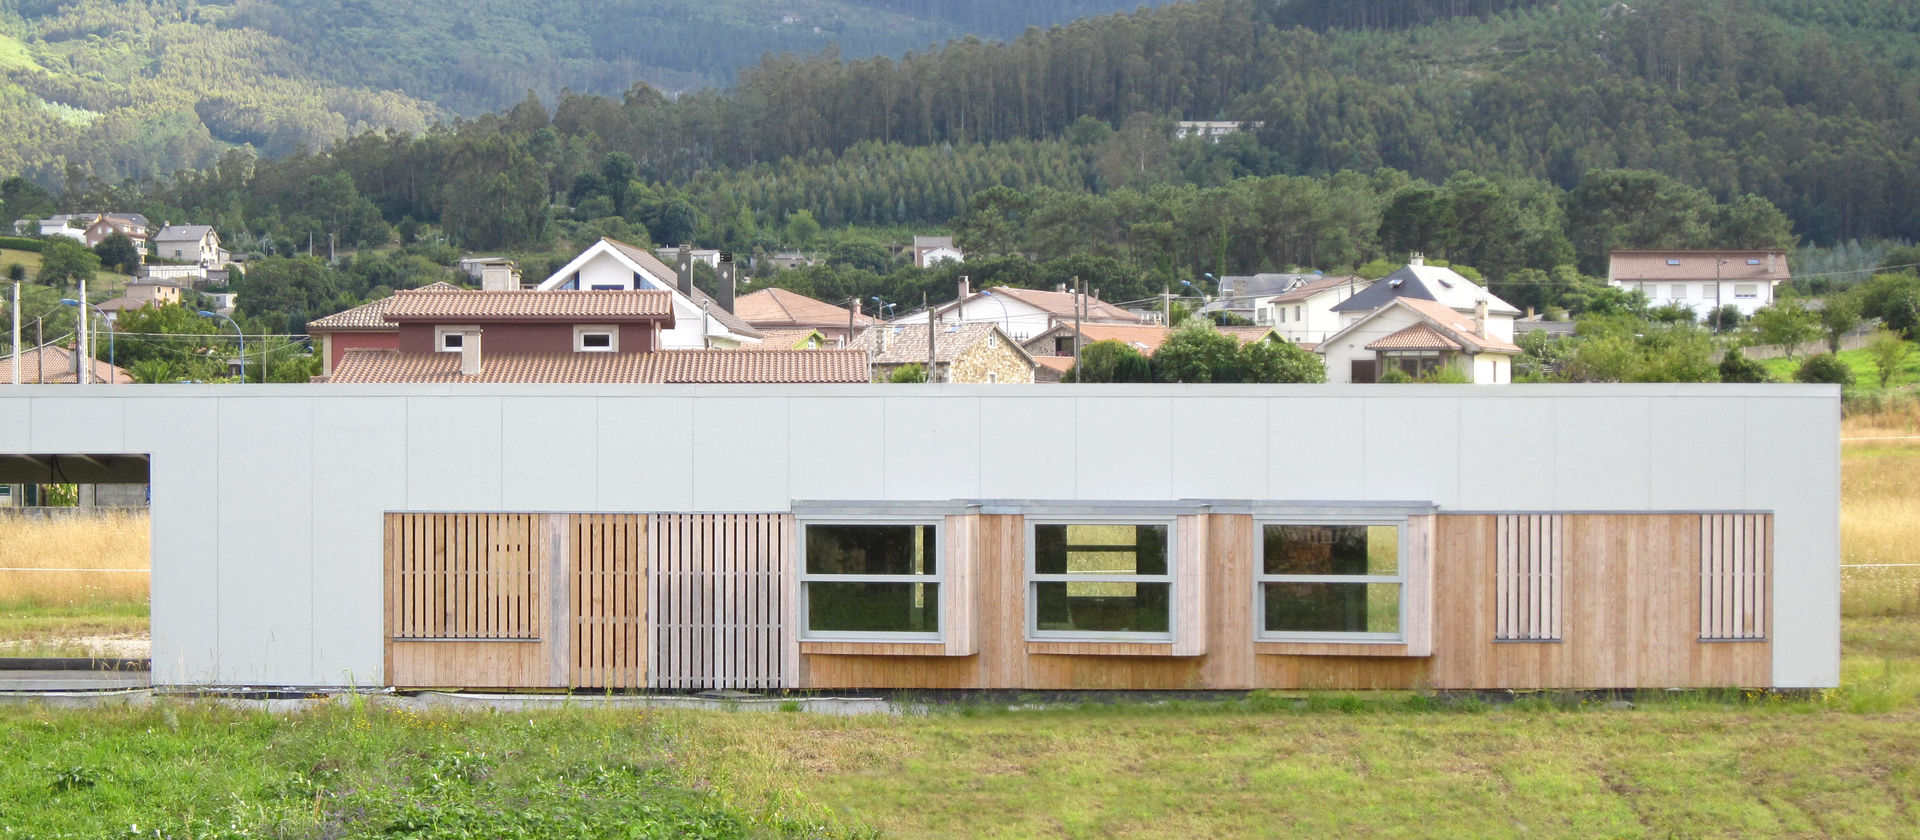 Vivienda modular en Culleredo (A Coruña) | en proceso Ezcurra e Ouzande arquitectura Casas de estilo moderno